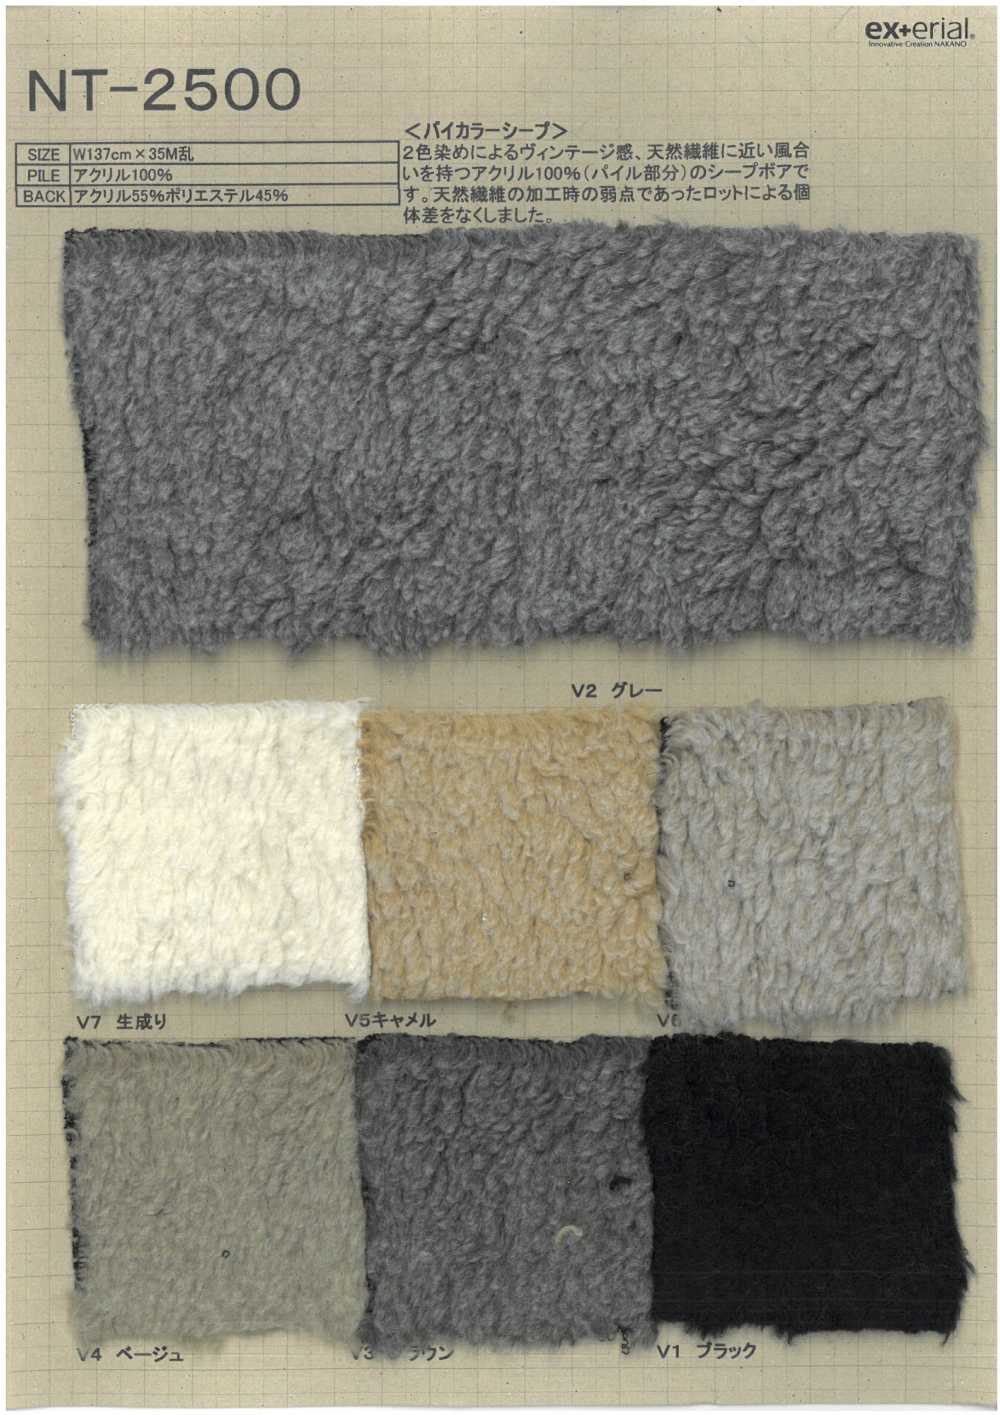 NT-2500 Fourrure Artisanale [mouton Bicolore][Fabrication De Textile] Industrie Du Jersey Nakano